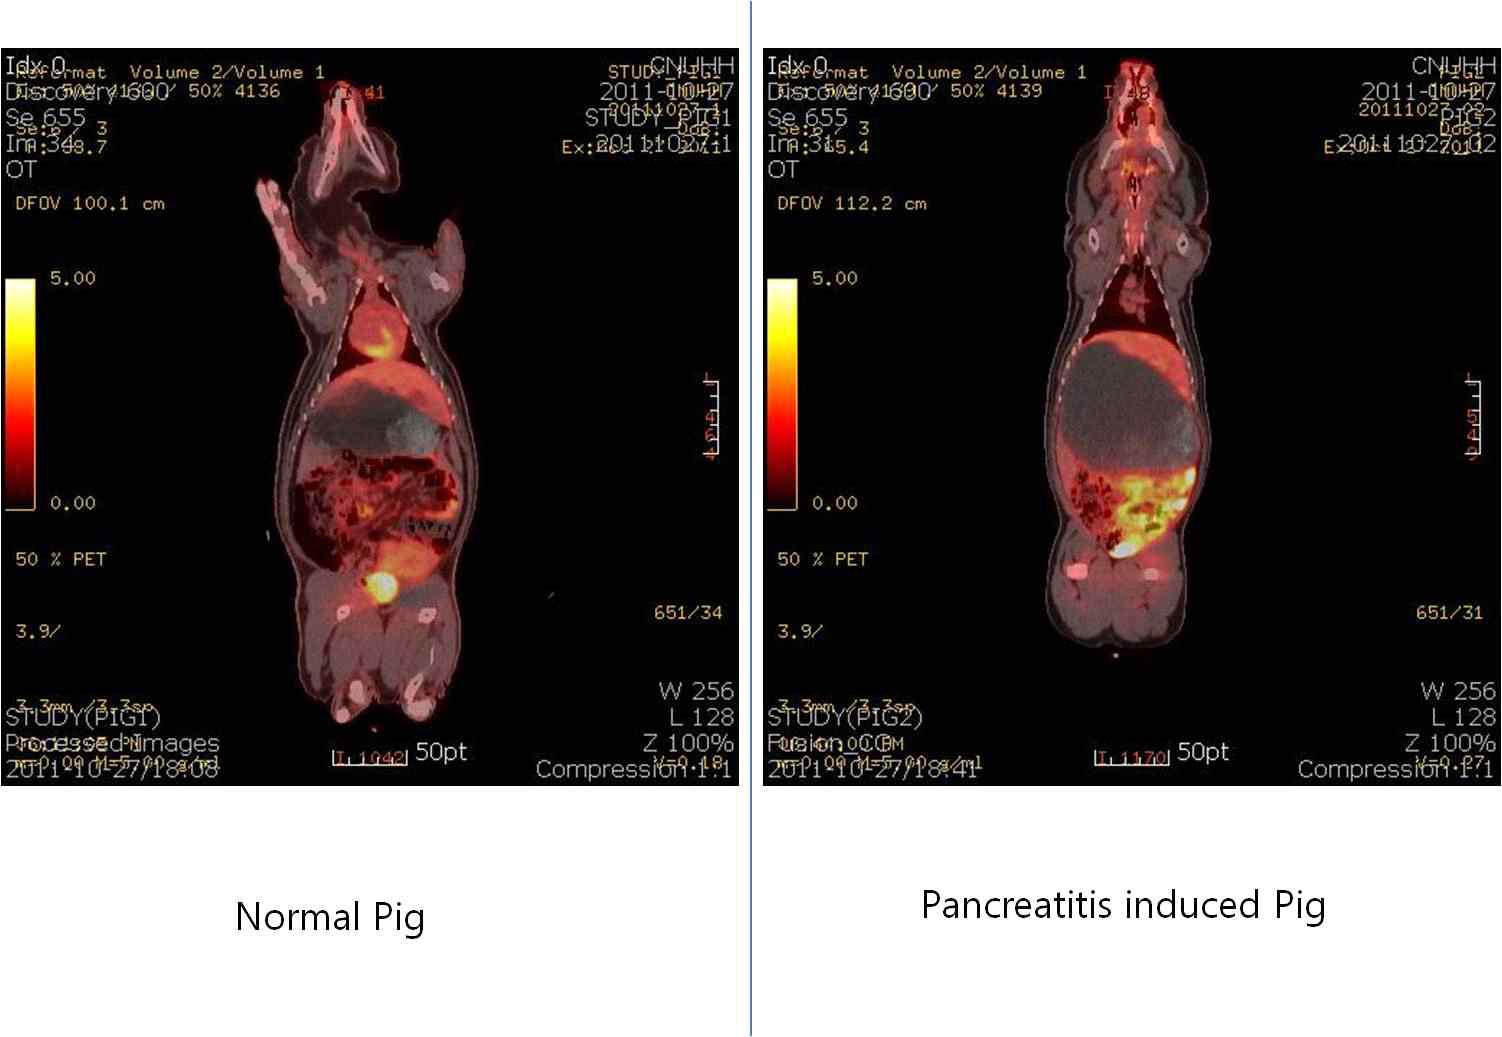 정상 미니돼지와 췌장염 유발 미니돼지에서 PET-CT의 영상에서 앙와위에 의한 췌장 영상